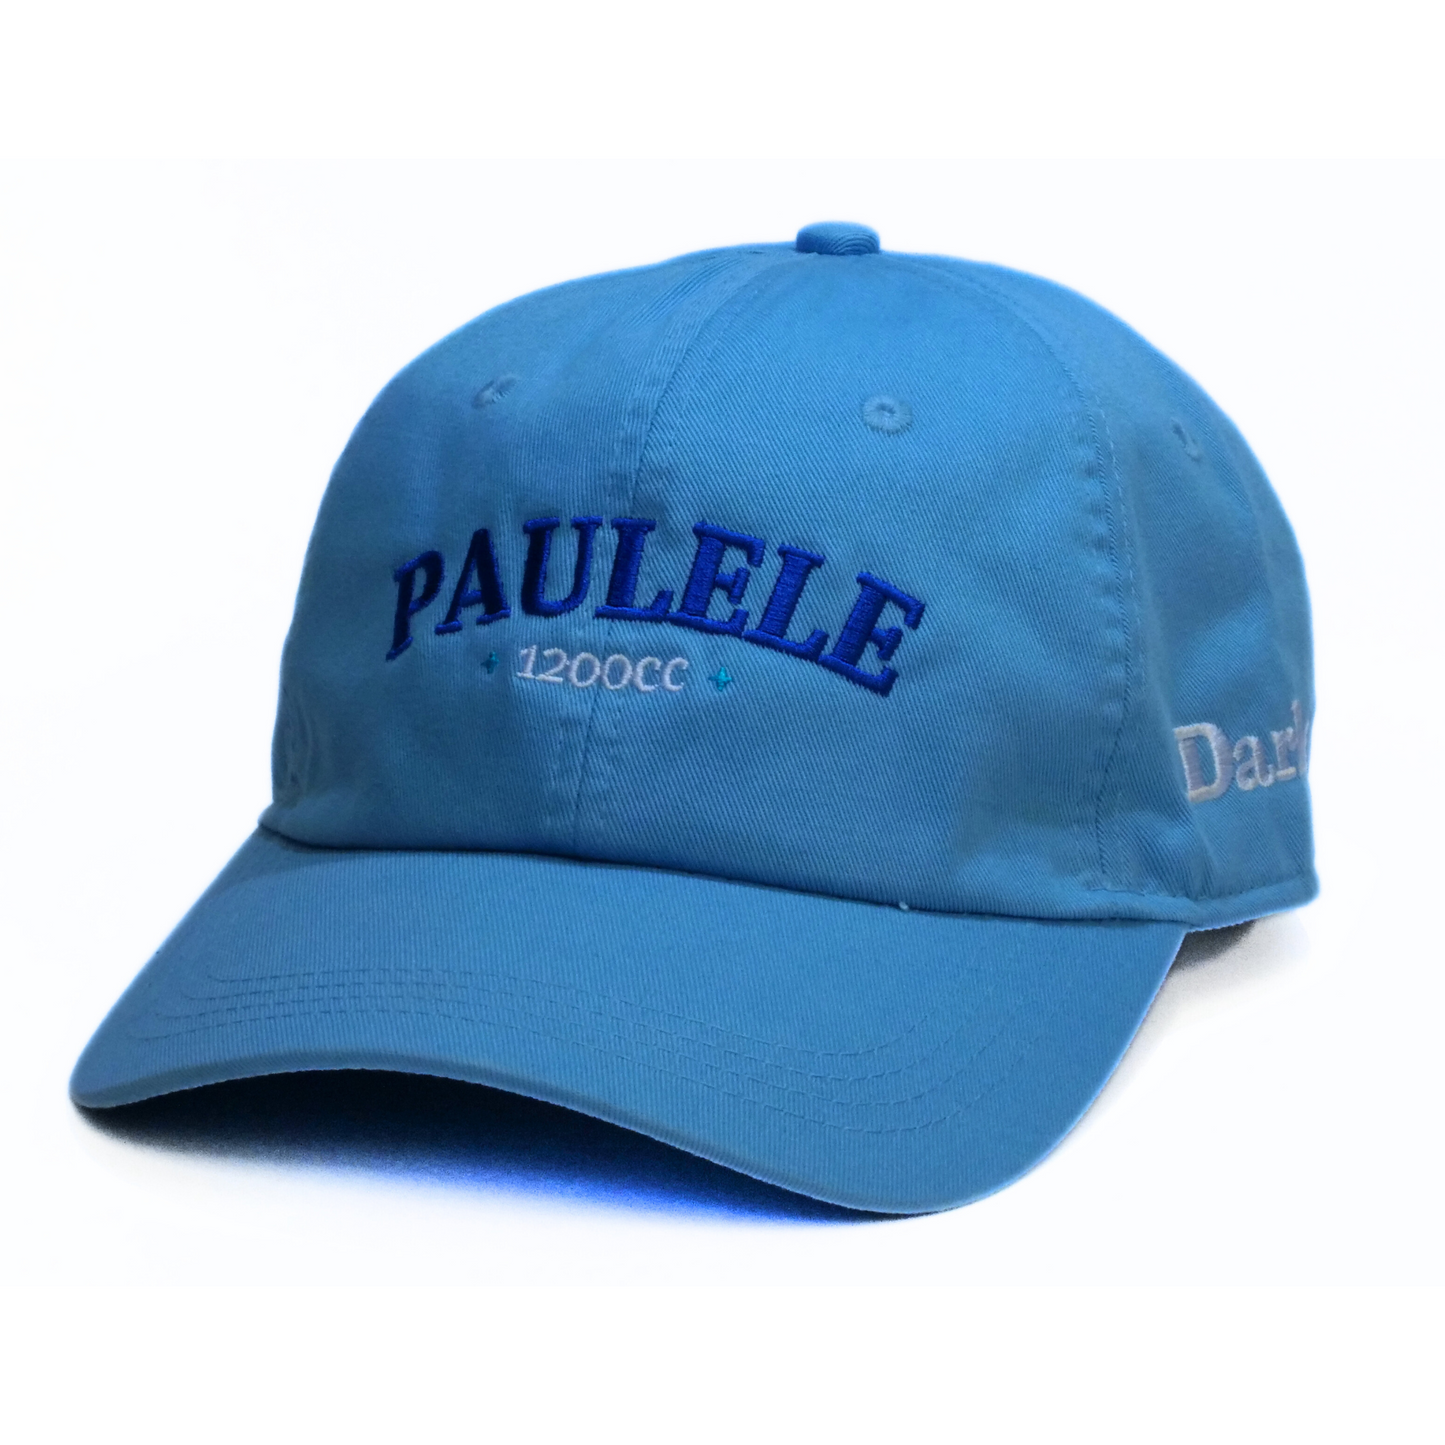 Paulele Baseball Cap - Darley